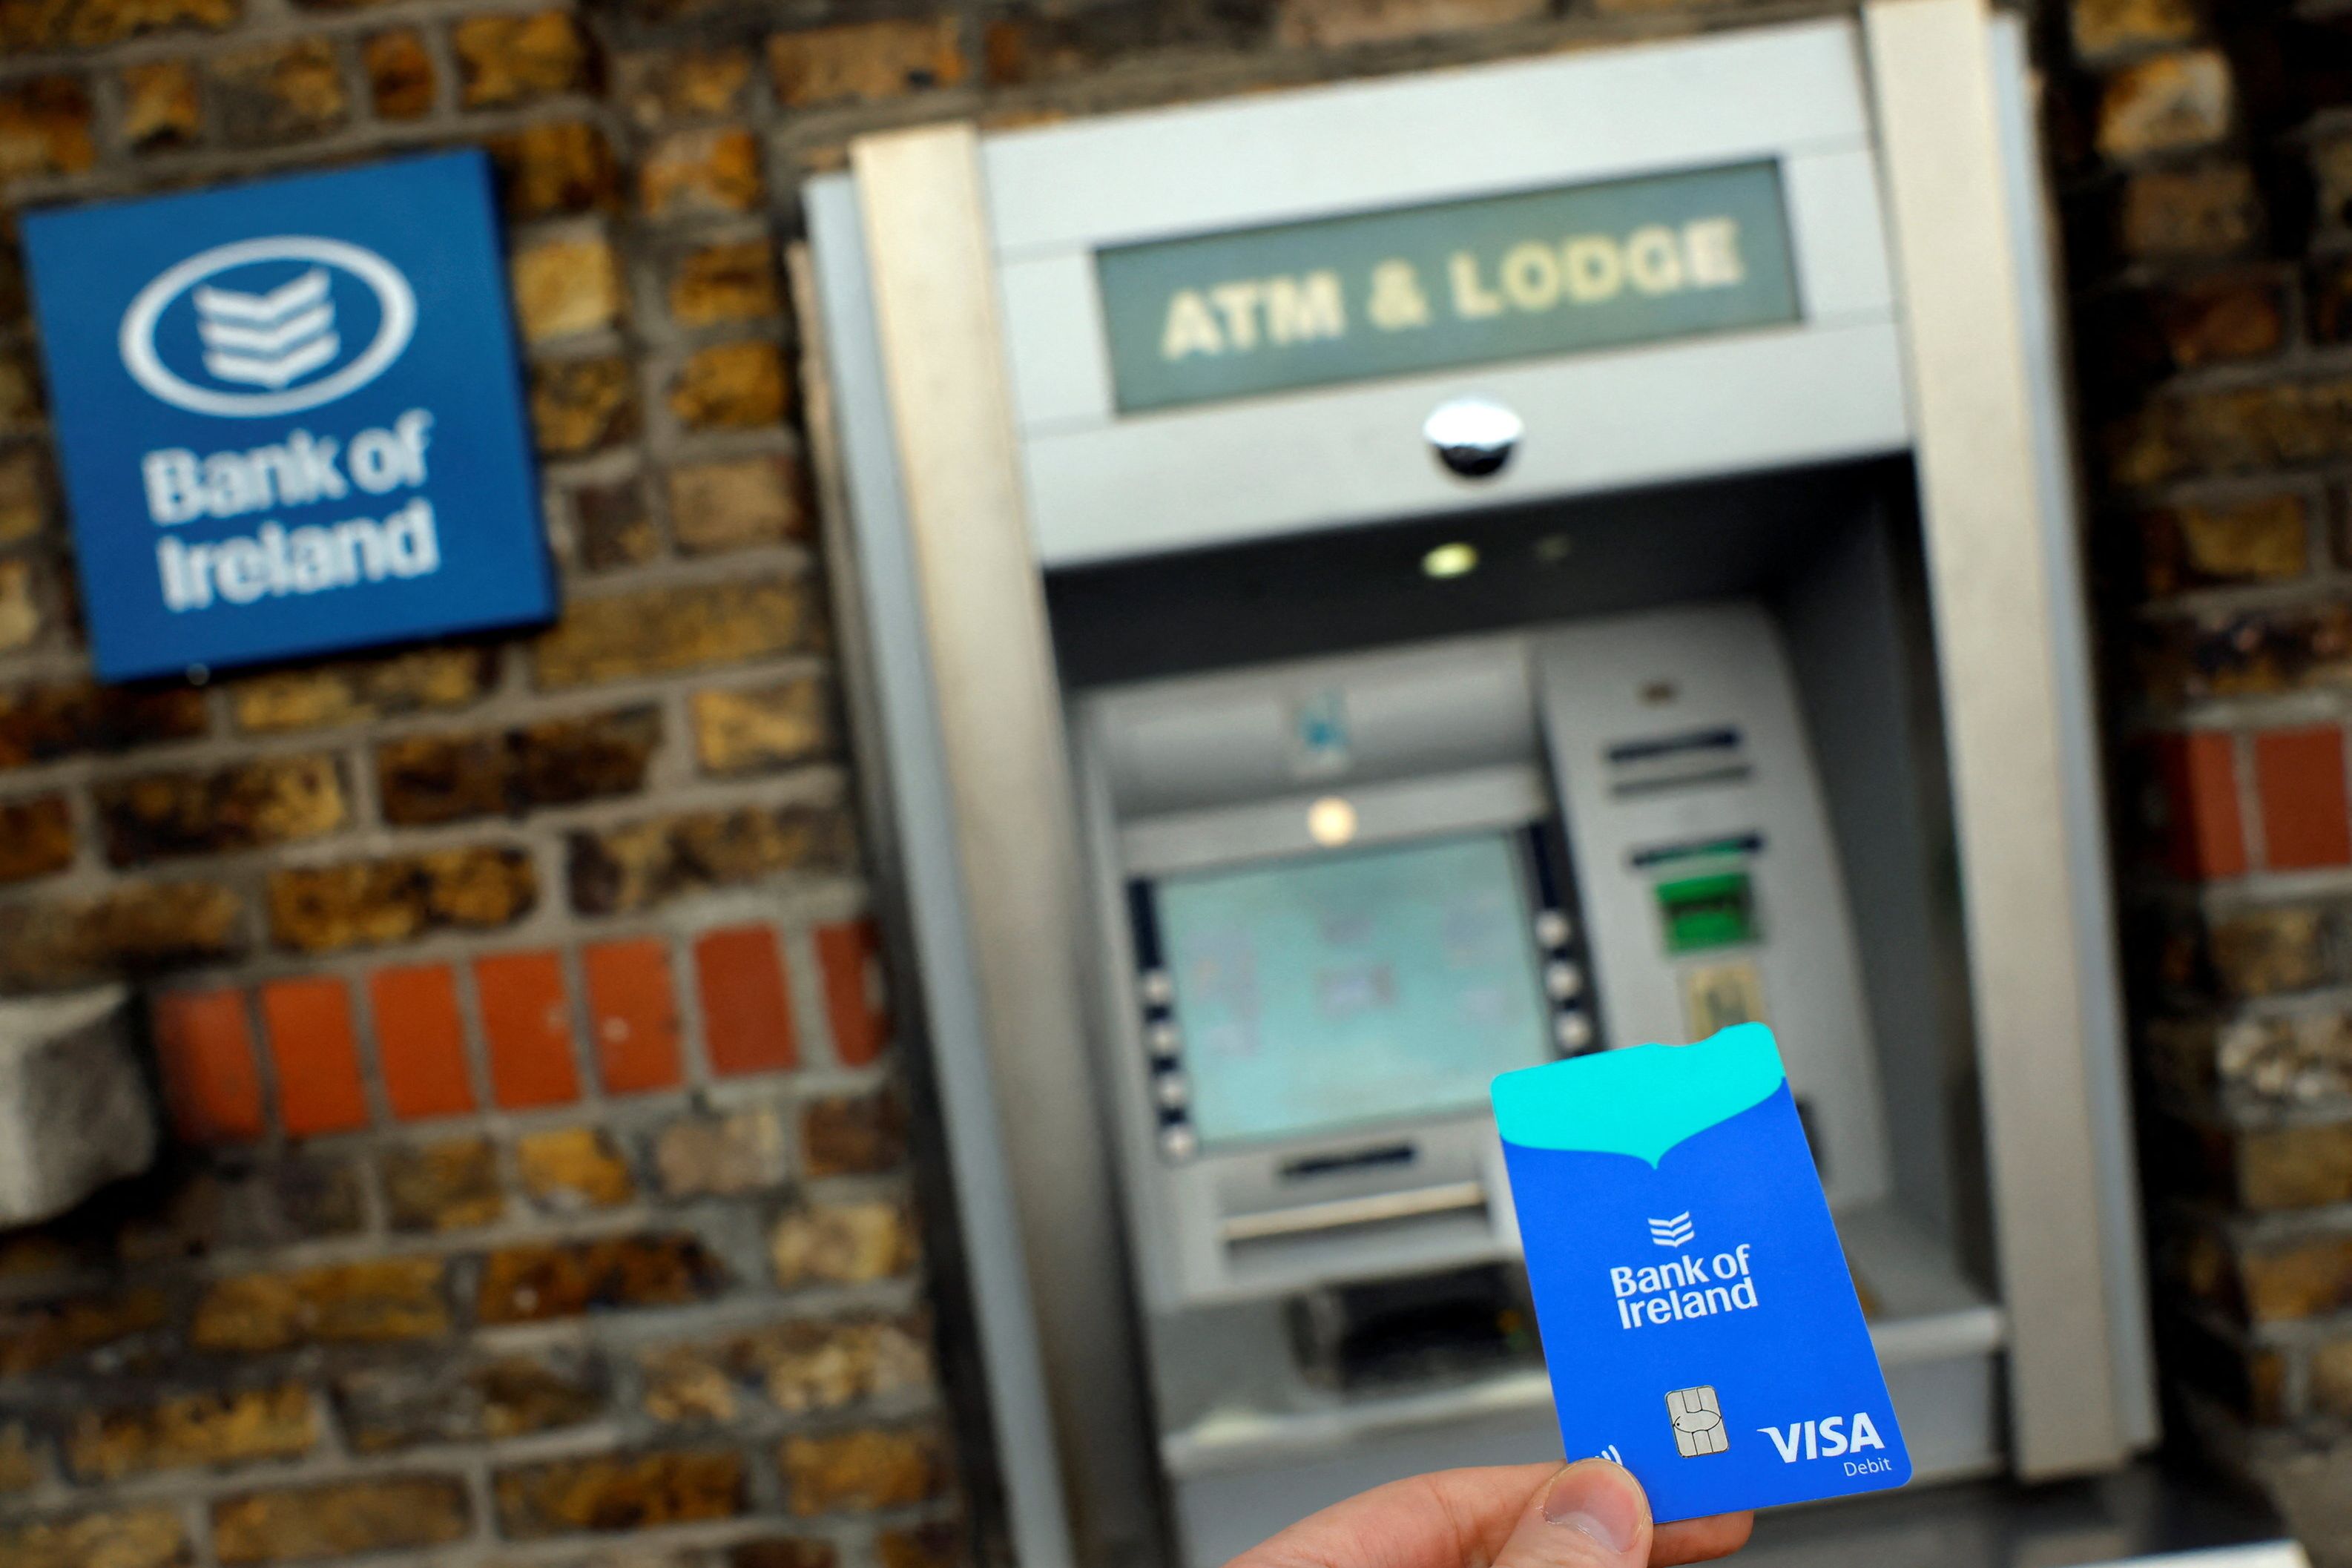 La Bank of Ireland donne six mois à ses clients pour rembourser l’argent retiré au cours de l’été en raison d’un défaut dans les distributeurs automatiques « sans intérêt »